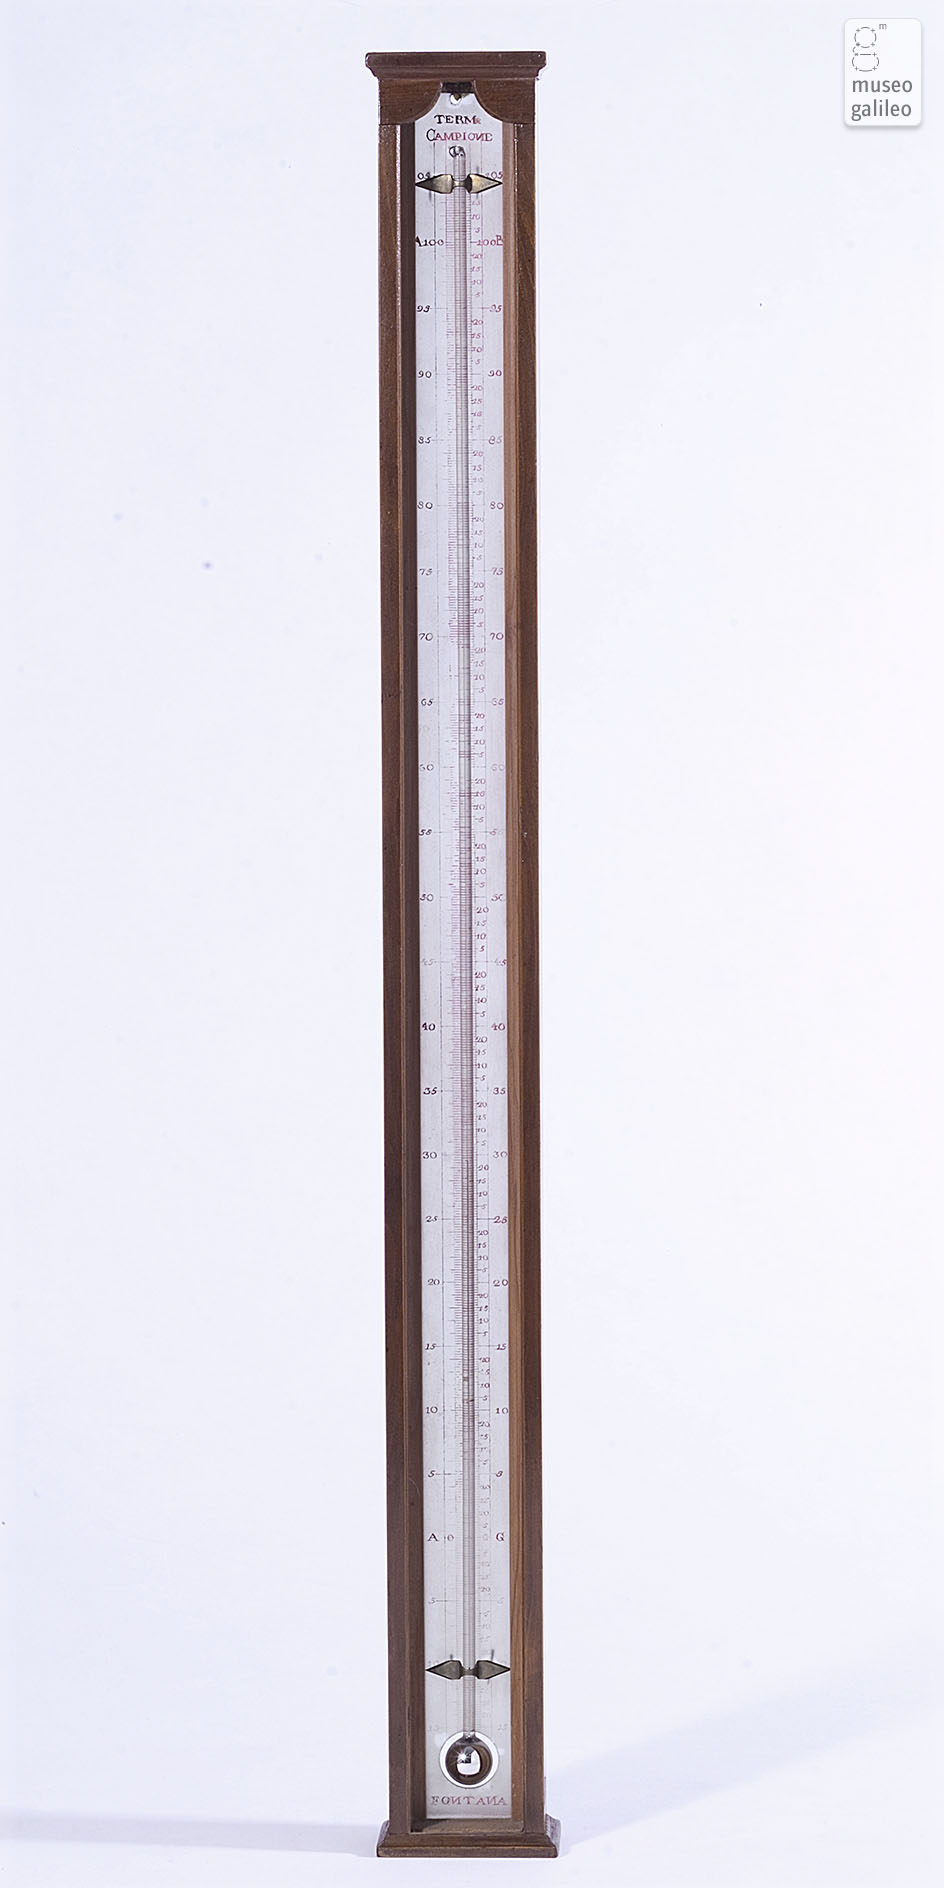 Termometro al mercurio di Fontana. ©Istituto e Museo di Storia della Scienza